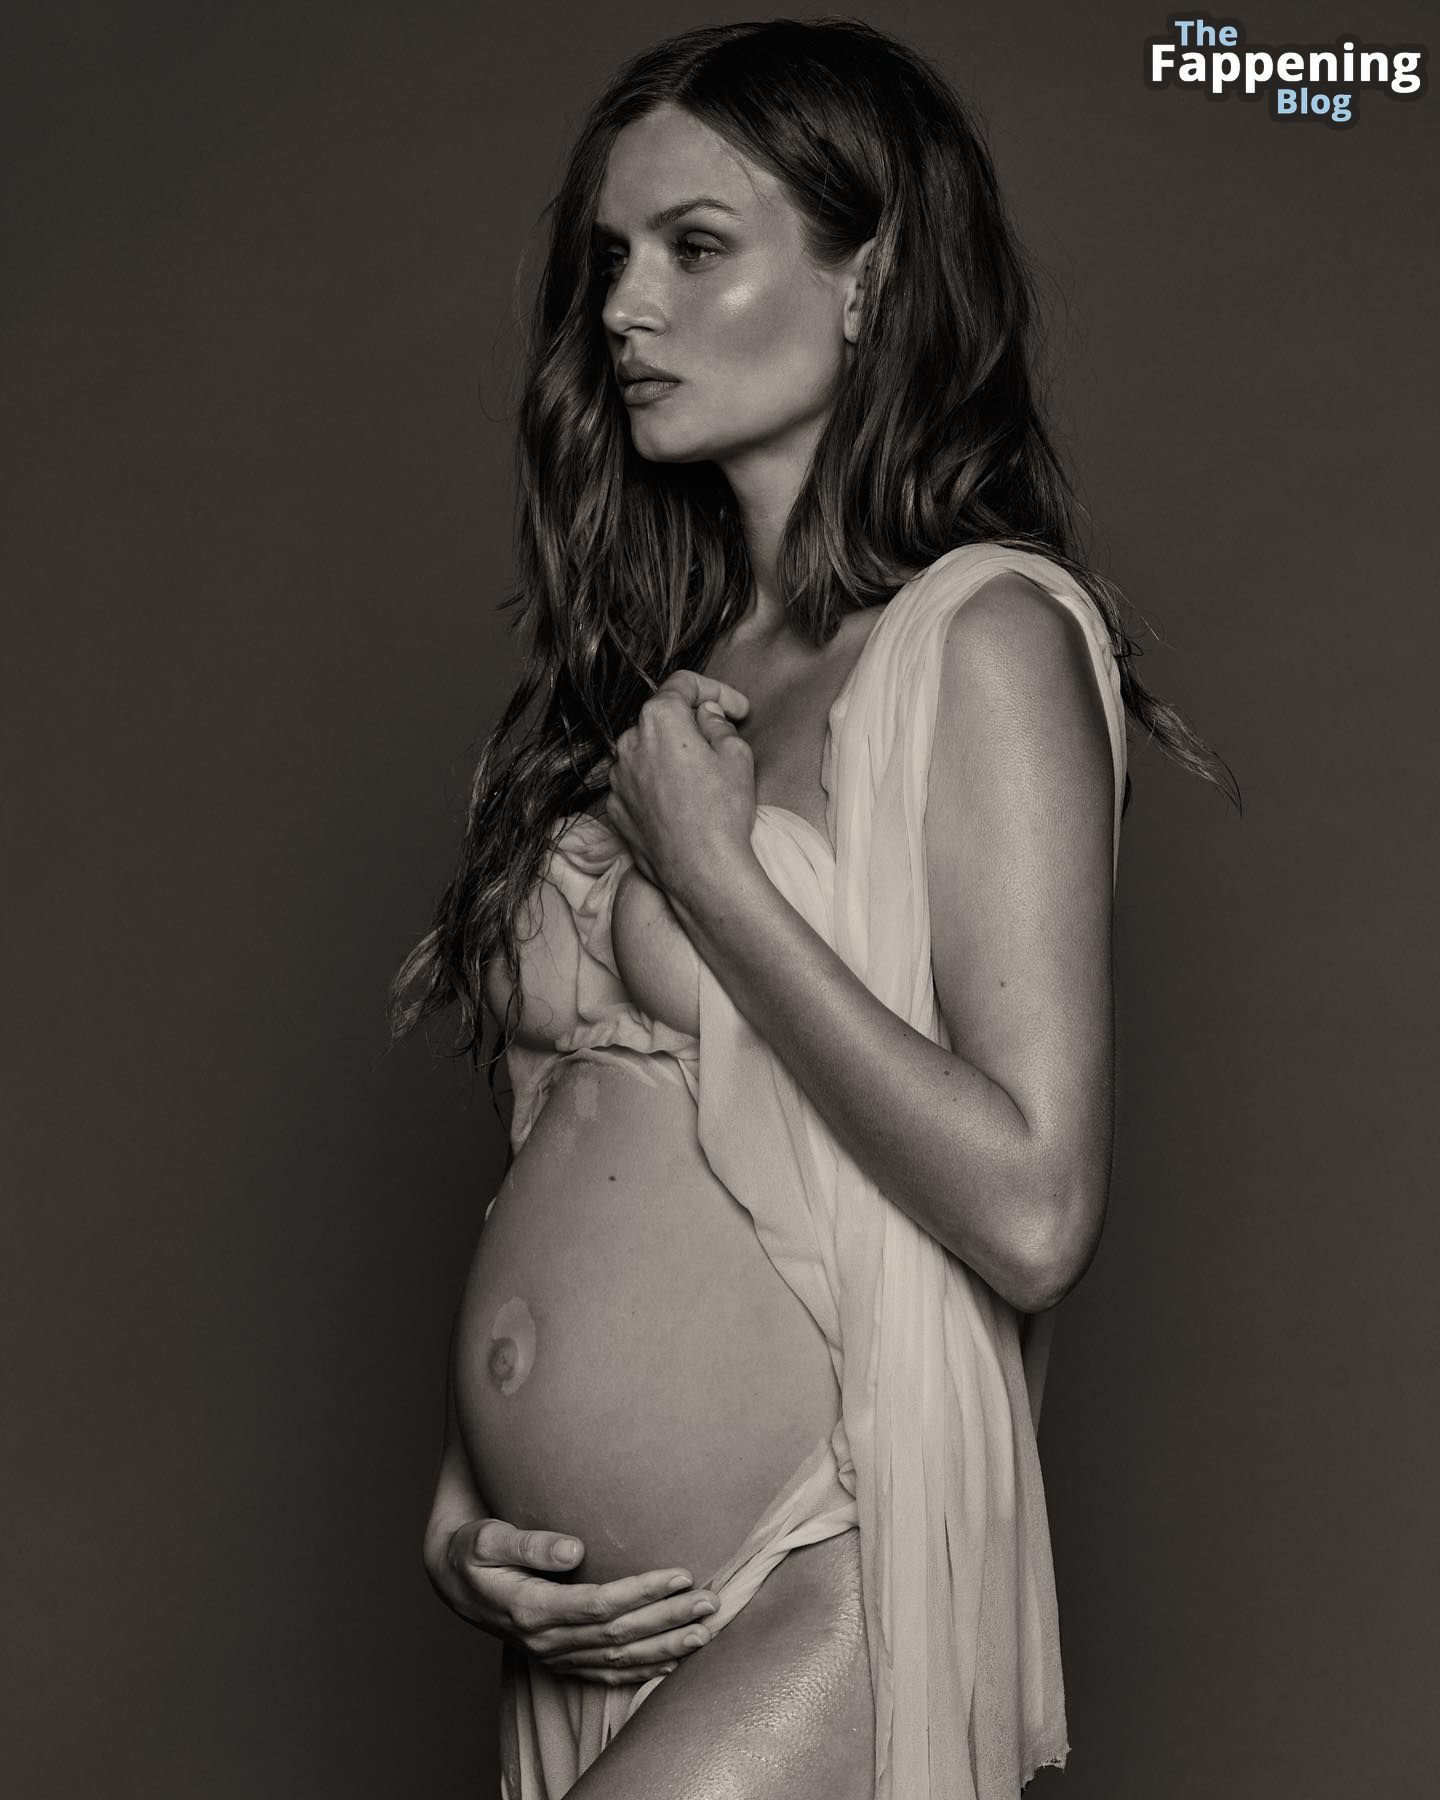 Pregnant-Josephine-Skriver-The-Fappening-Blog-3.jpg